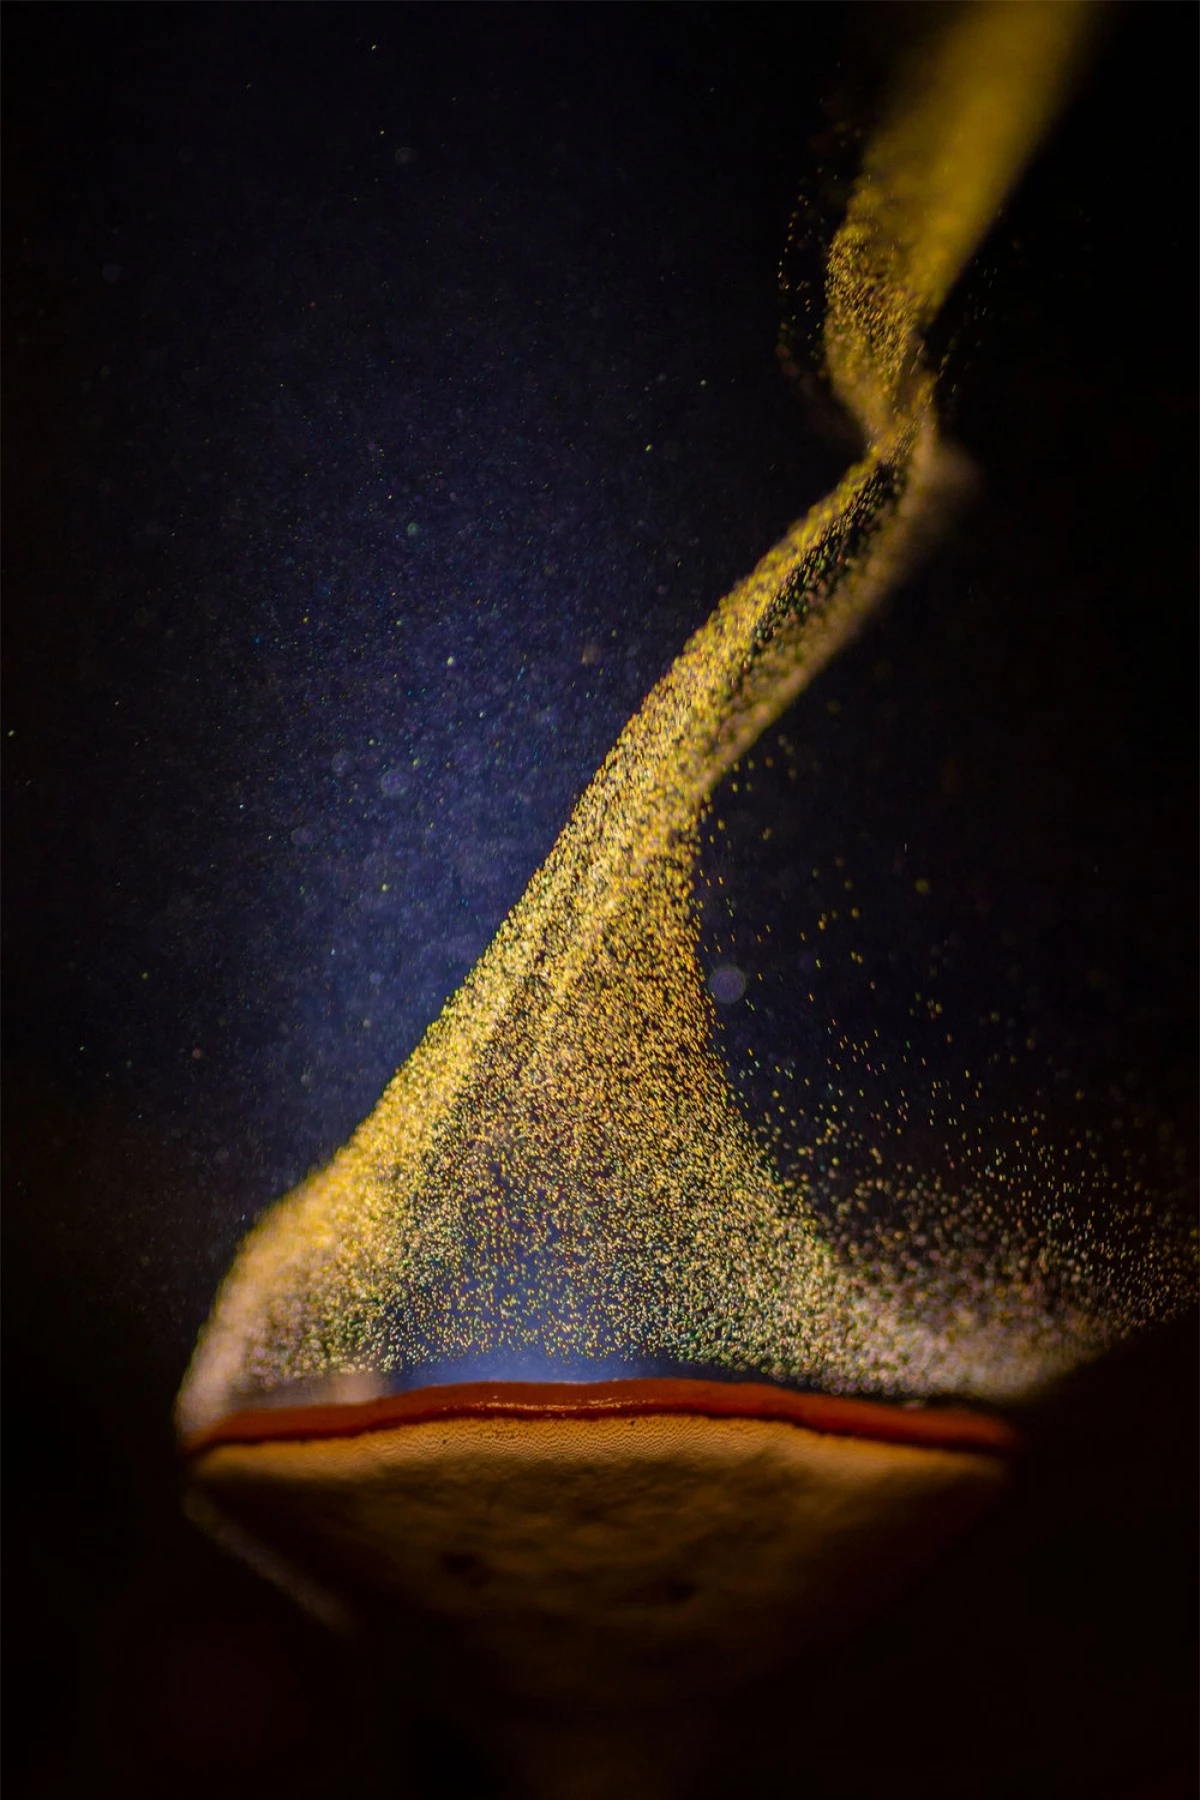 Bức ảnh "Chiếc Cốc lửa" của tác giả Sarang Naik chụp tại Toplepada, Ấn Độ cho thấy khoảnh khắc độc đáo khi một cây nấm đang phát tán bào tử dưới ánh đèn.